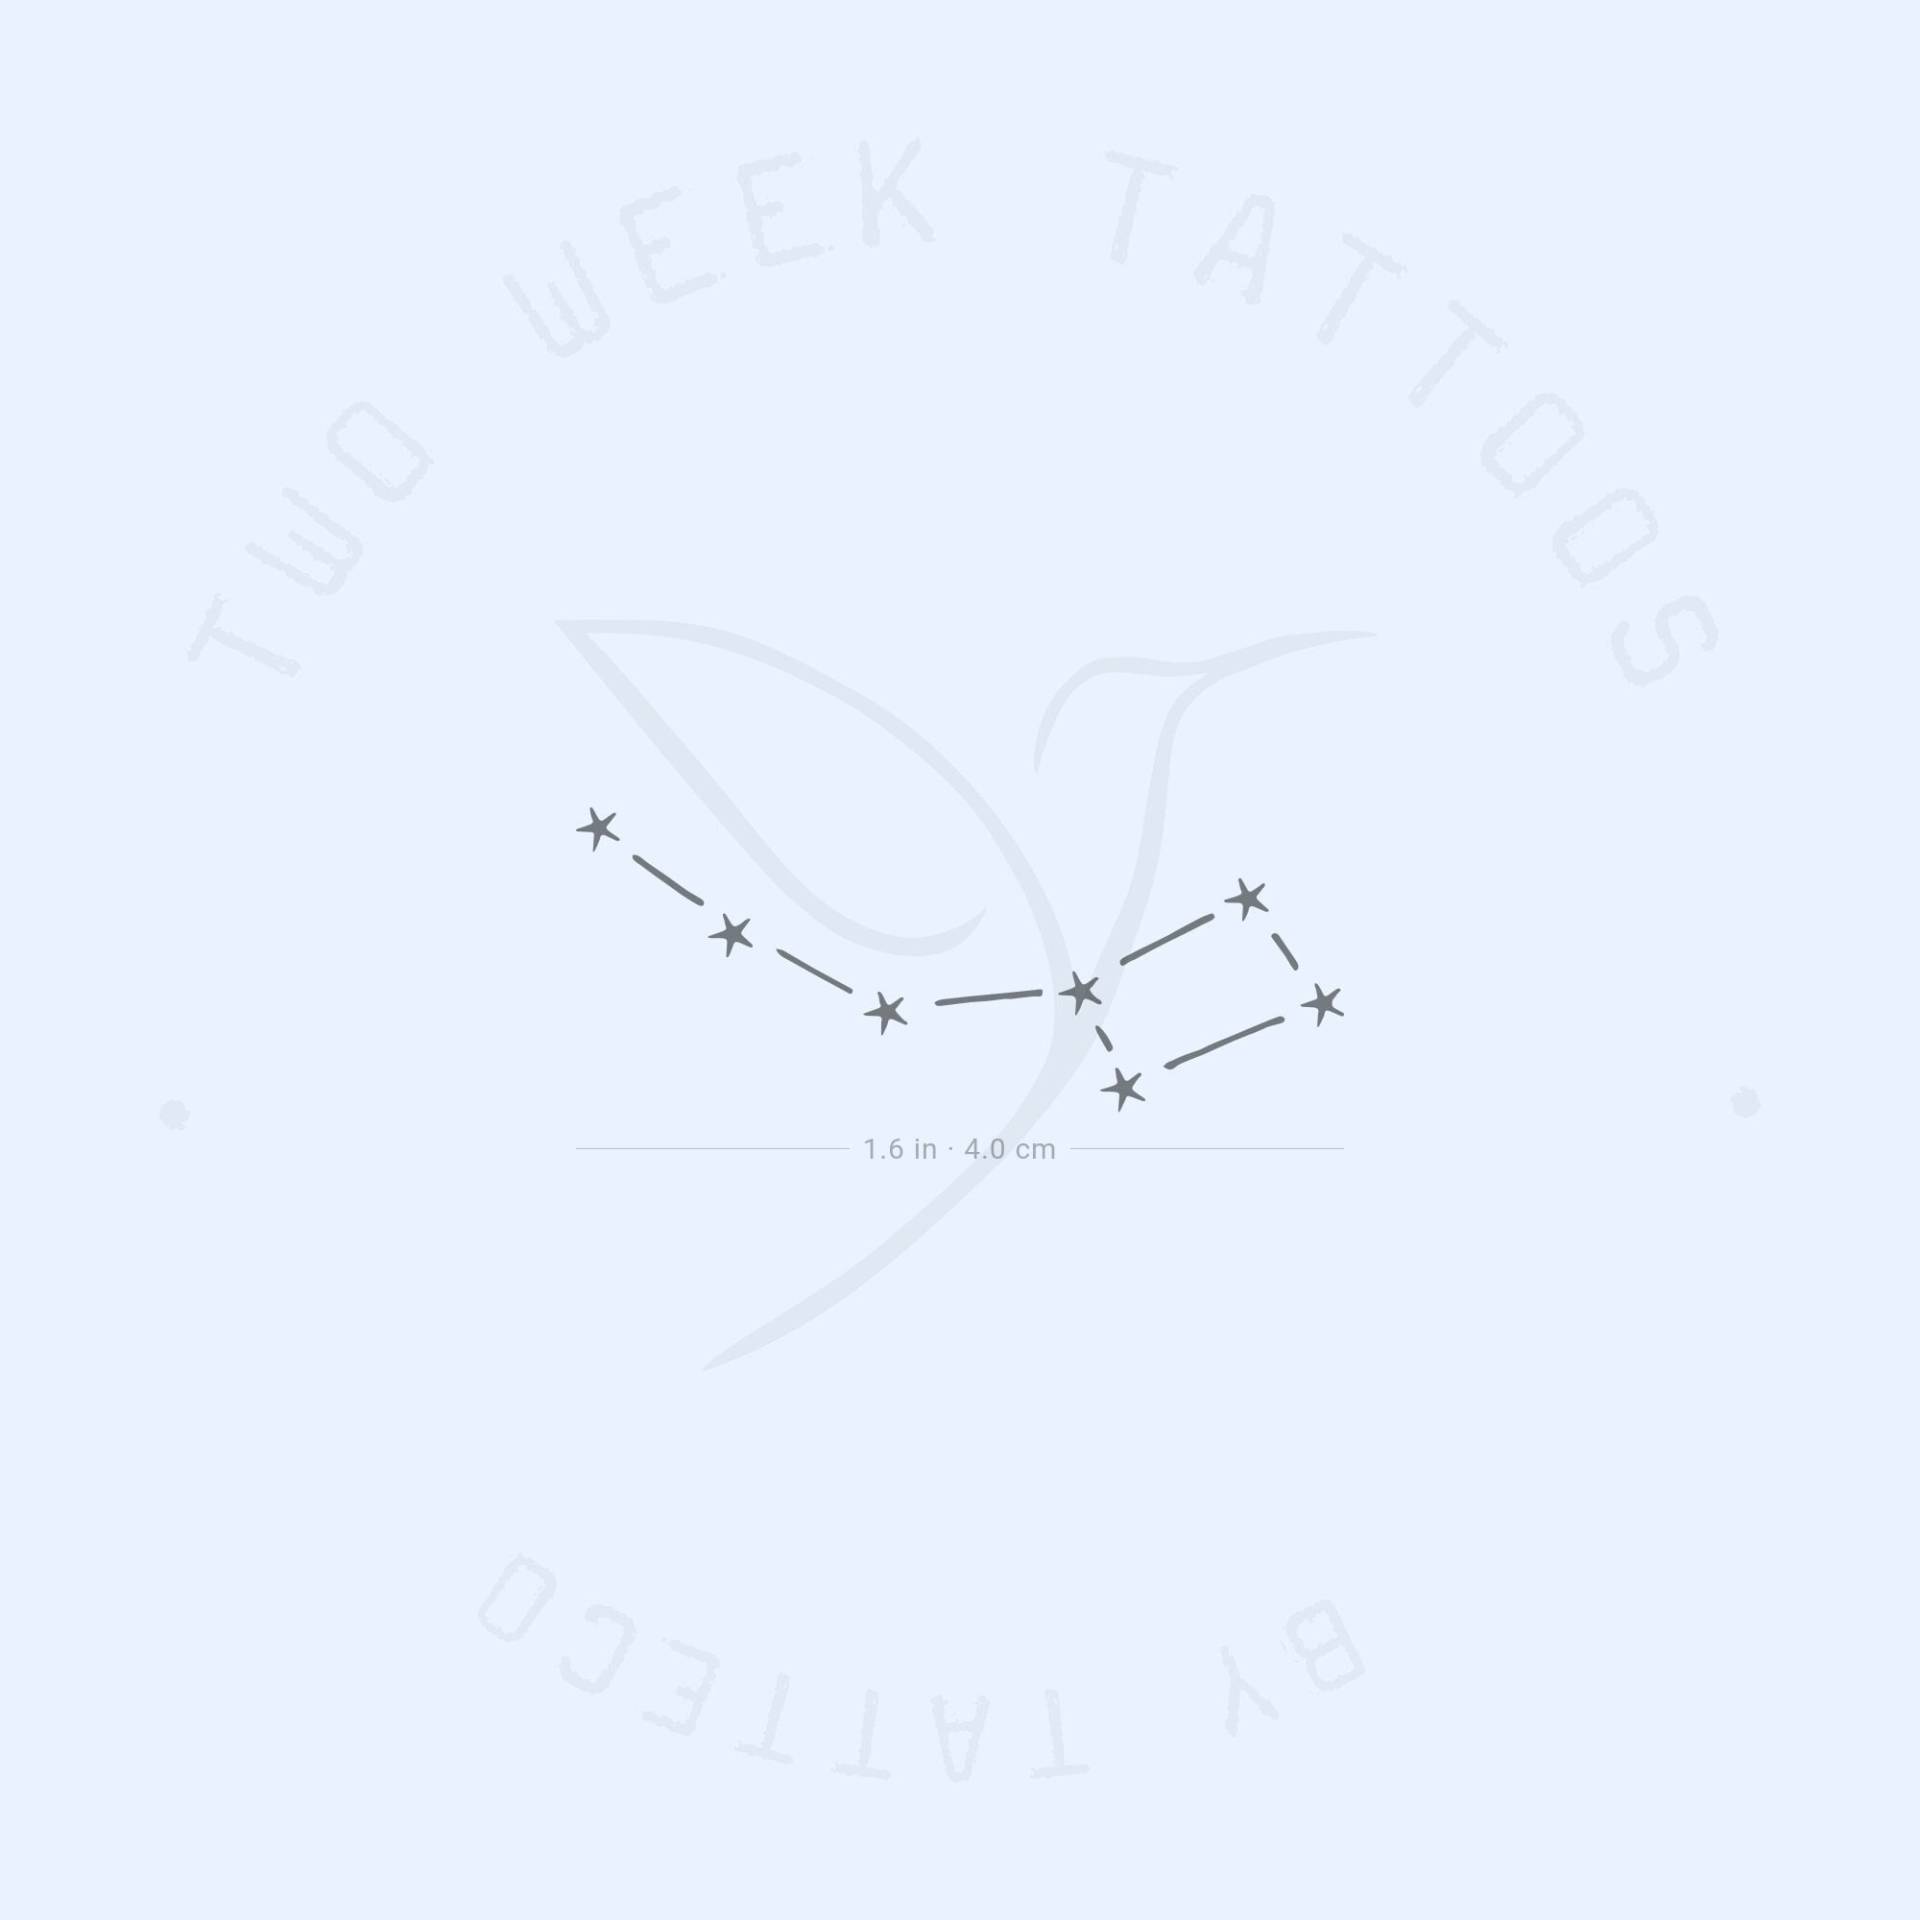 Kleiner Wasserlöffel Semi-Permanent Tattoo | 2Er Set von Etsy - twoweektattoos